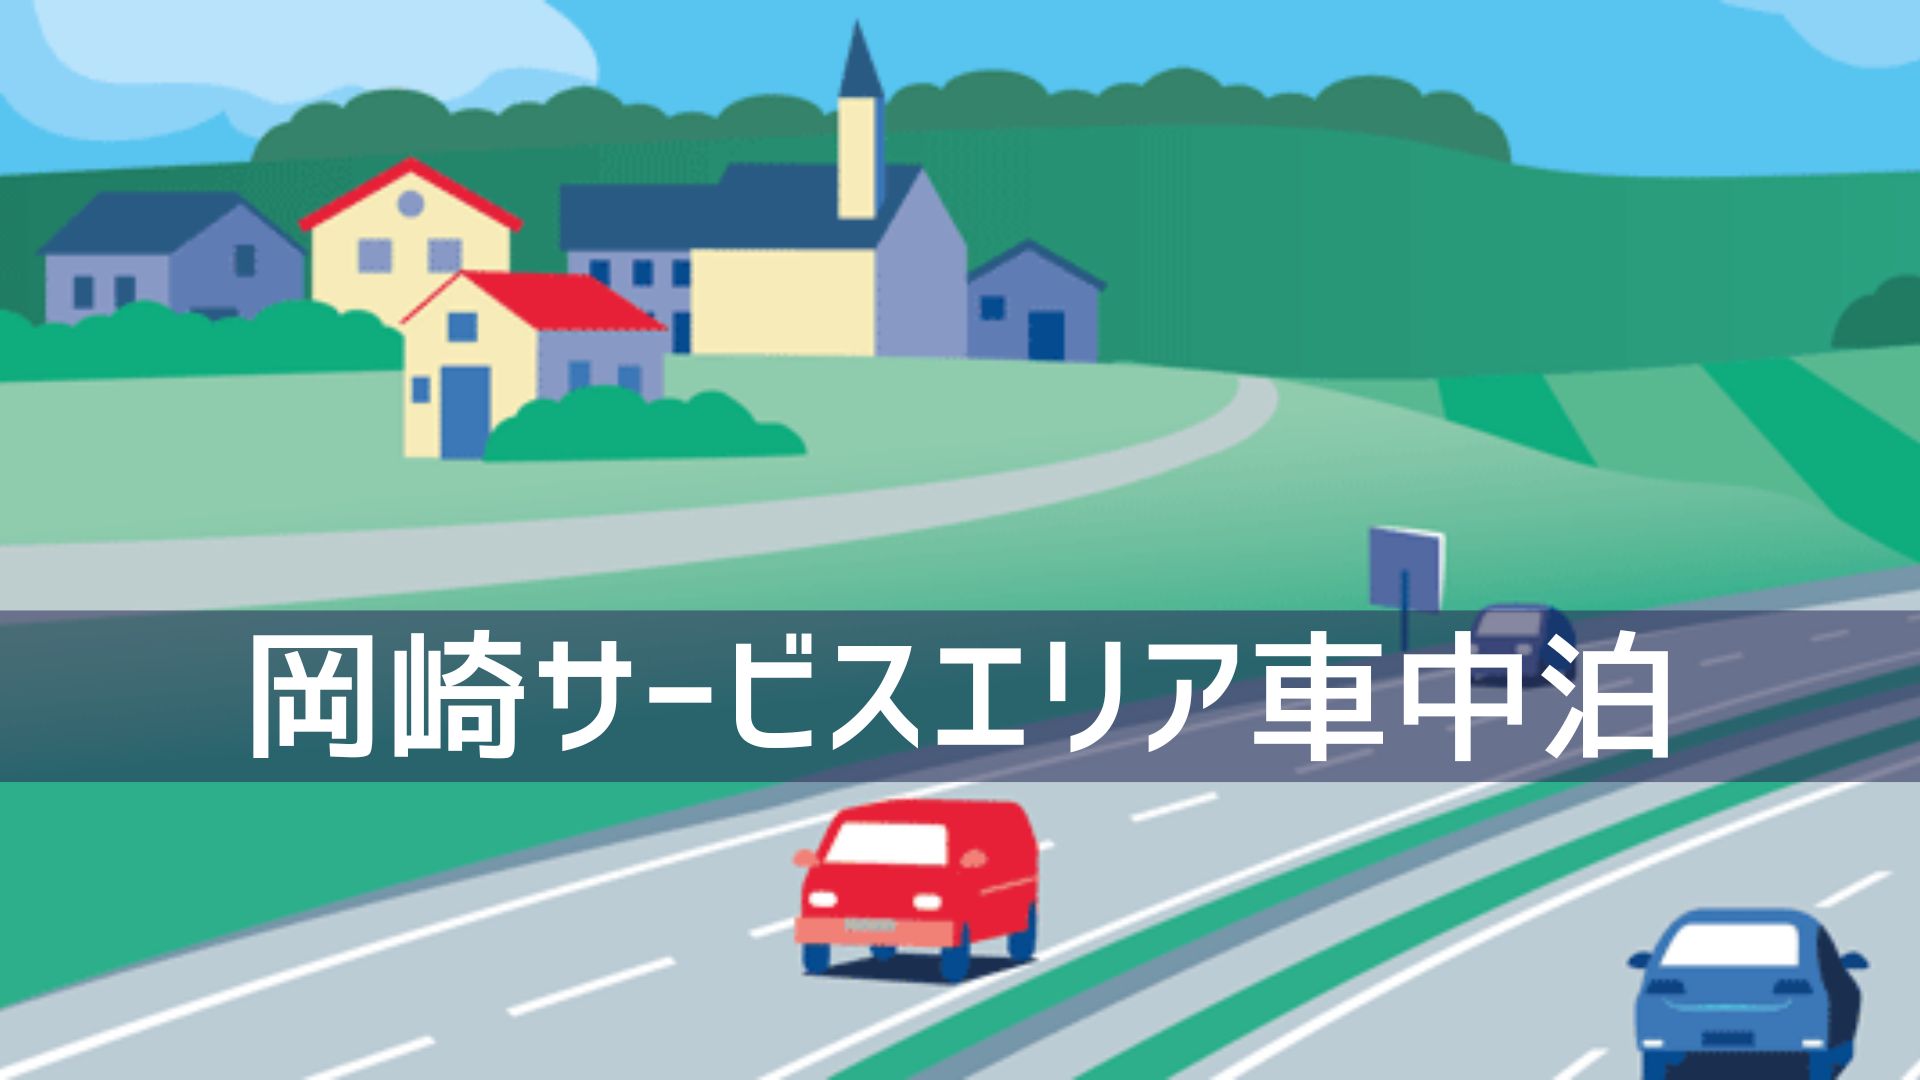 岡崎サービスエリアで車中泊 愛知県で一番新しい施設は充実度100 だった どりとらぶろぐ